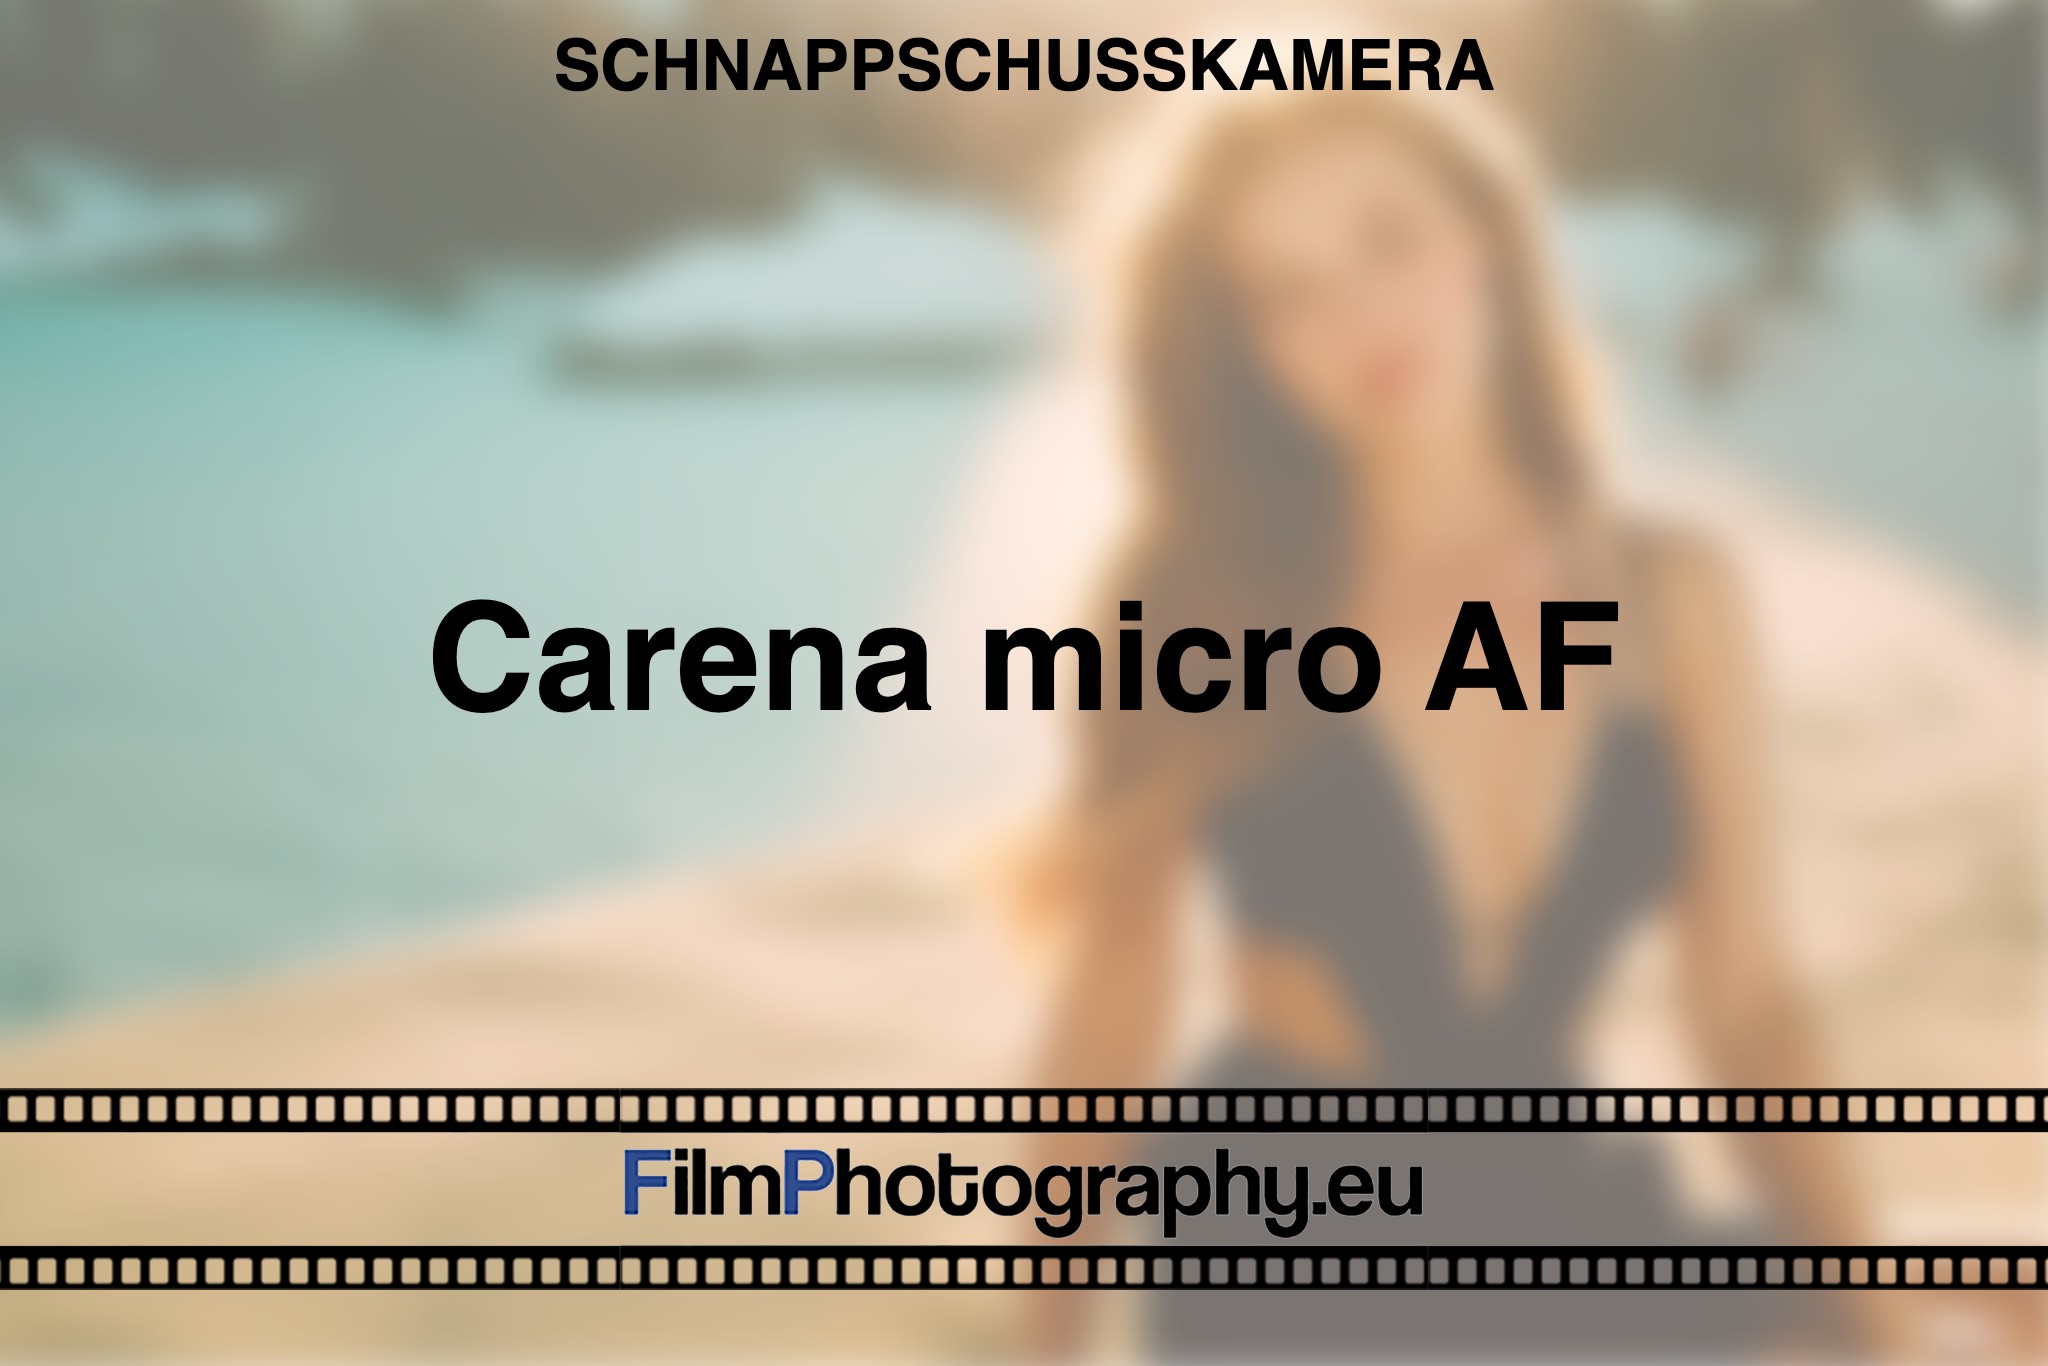 carena-micro-af-schnappschusskamera-bnv